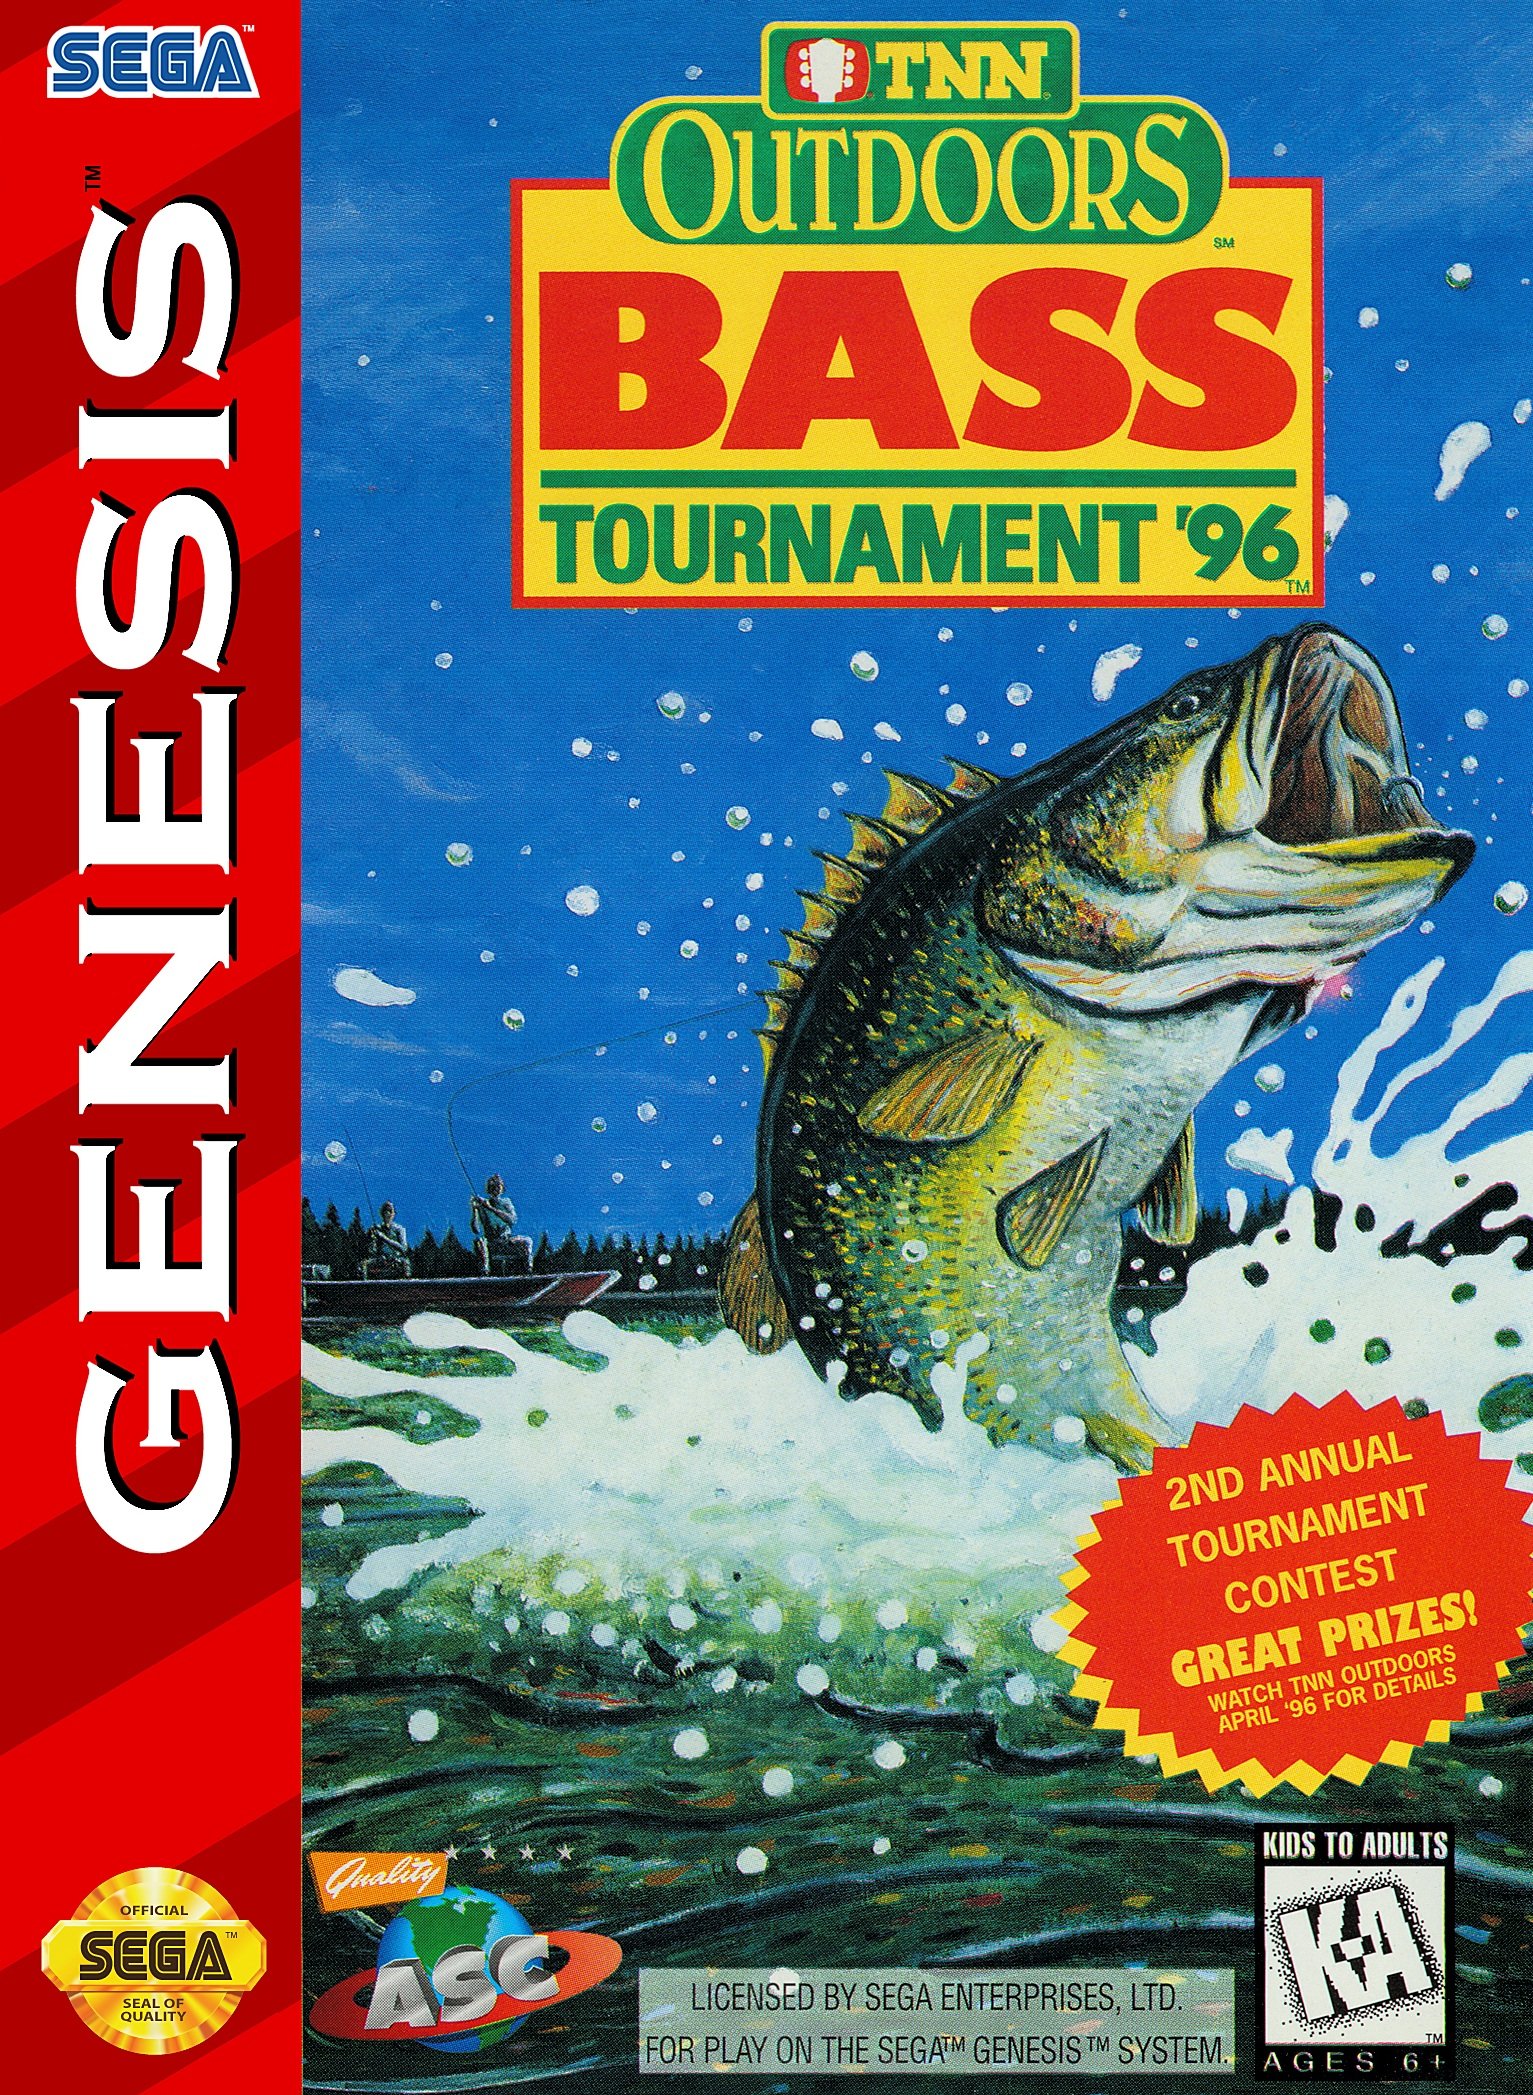 Image of TNN Outdoors Bass Tournament '96